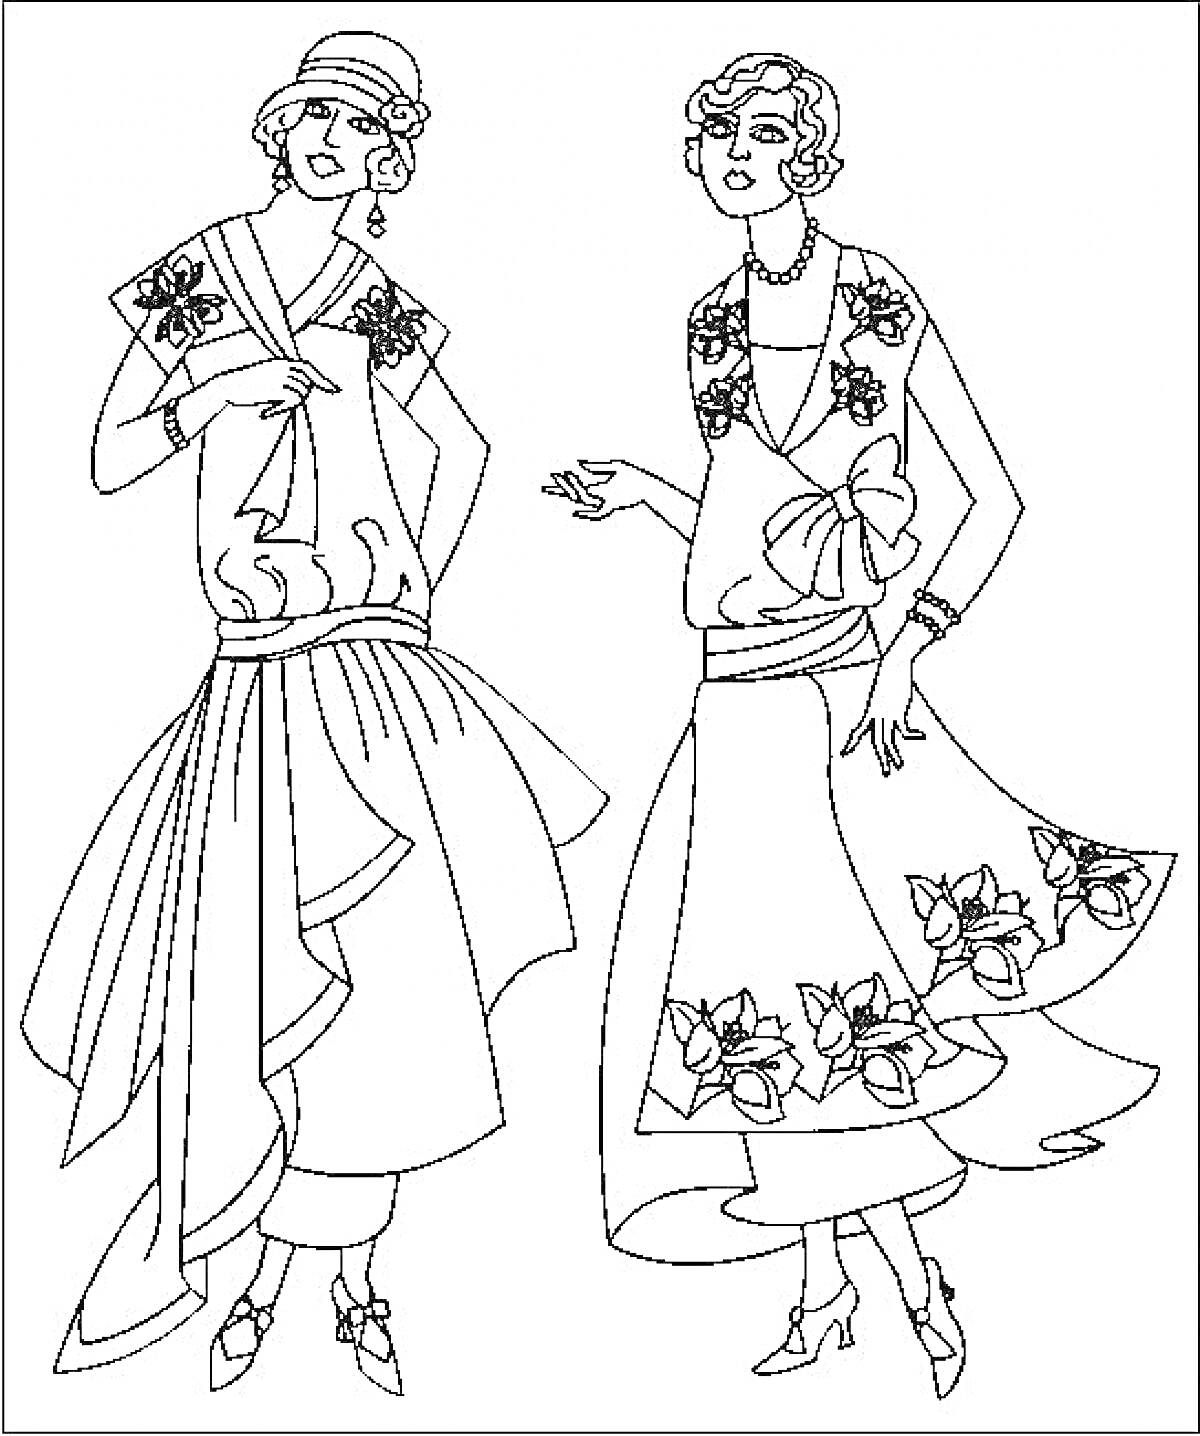 Две топ-модели в элегантных платьях с цветочными узорами и шляпкам, позирующие для фотосессии